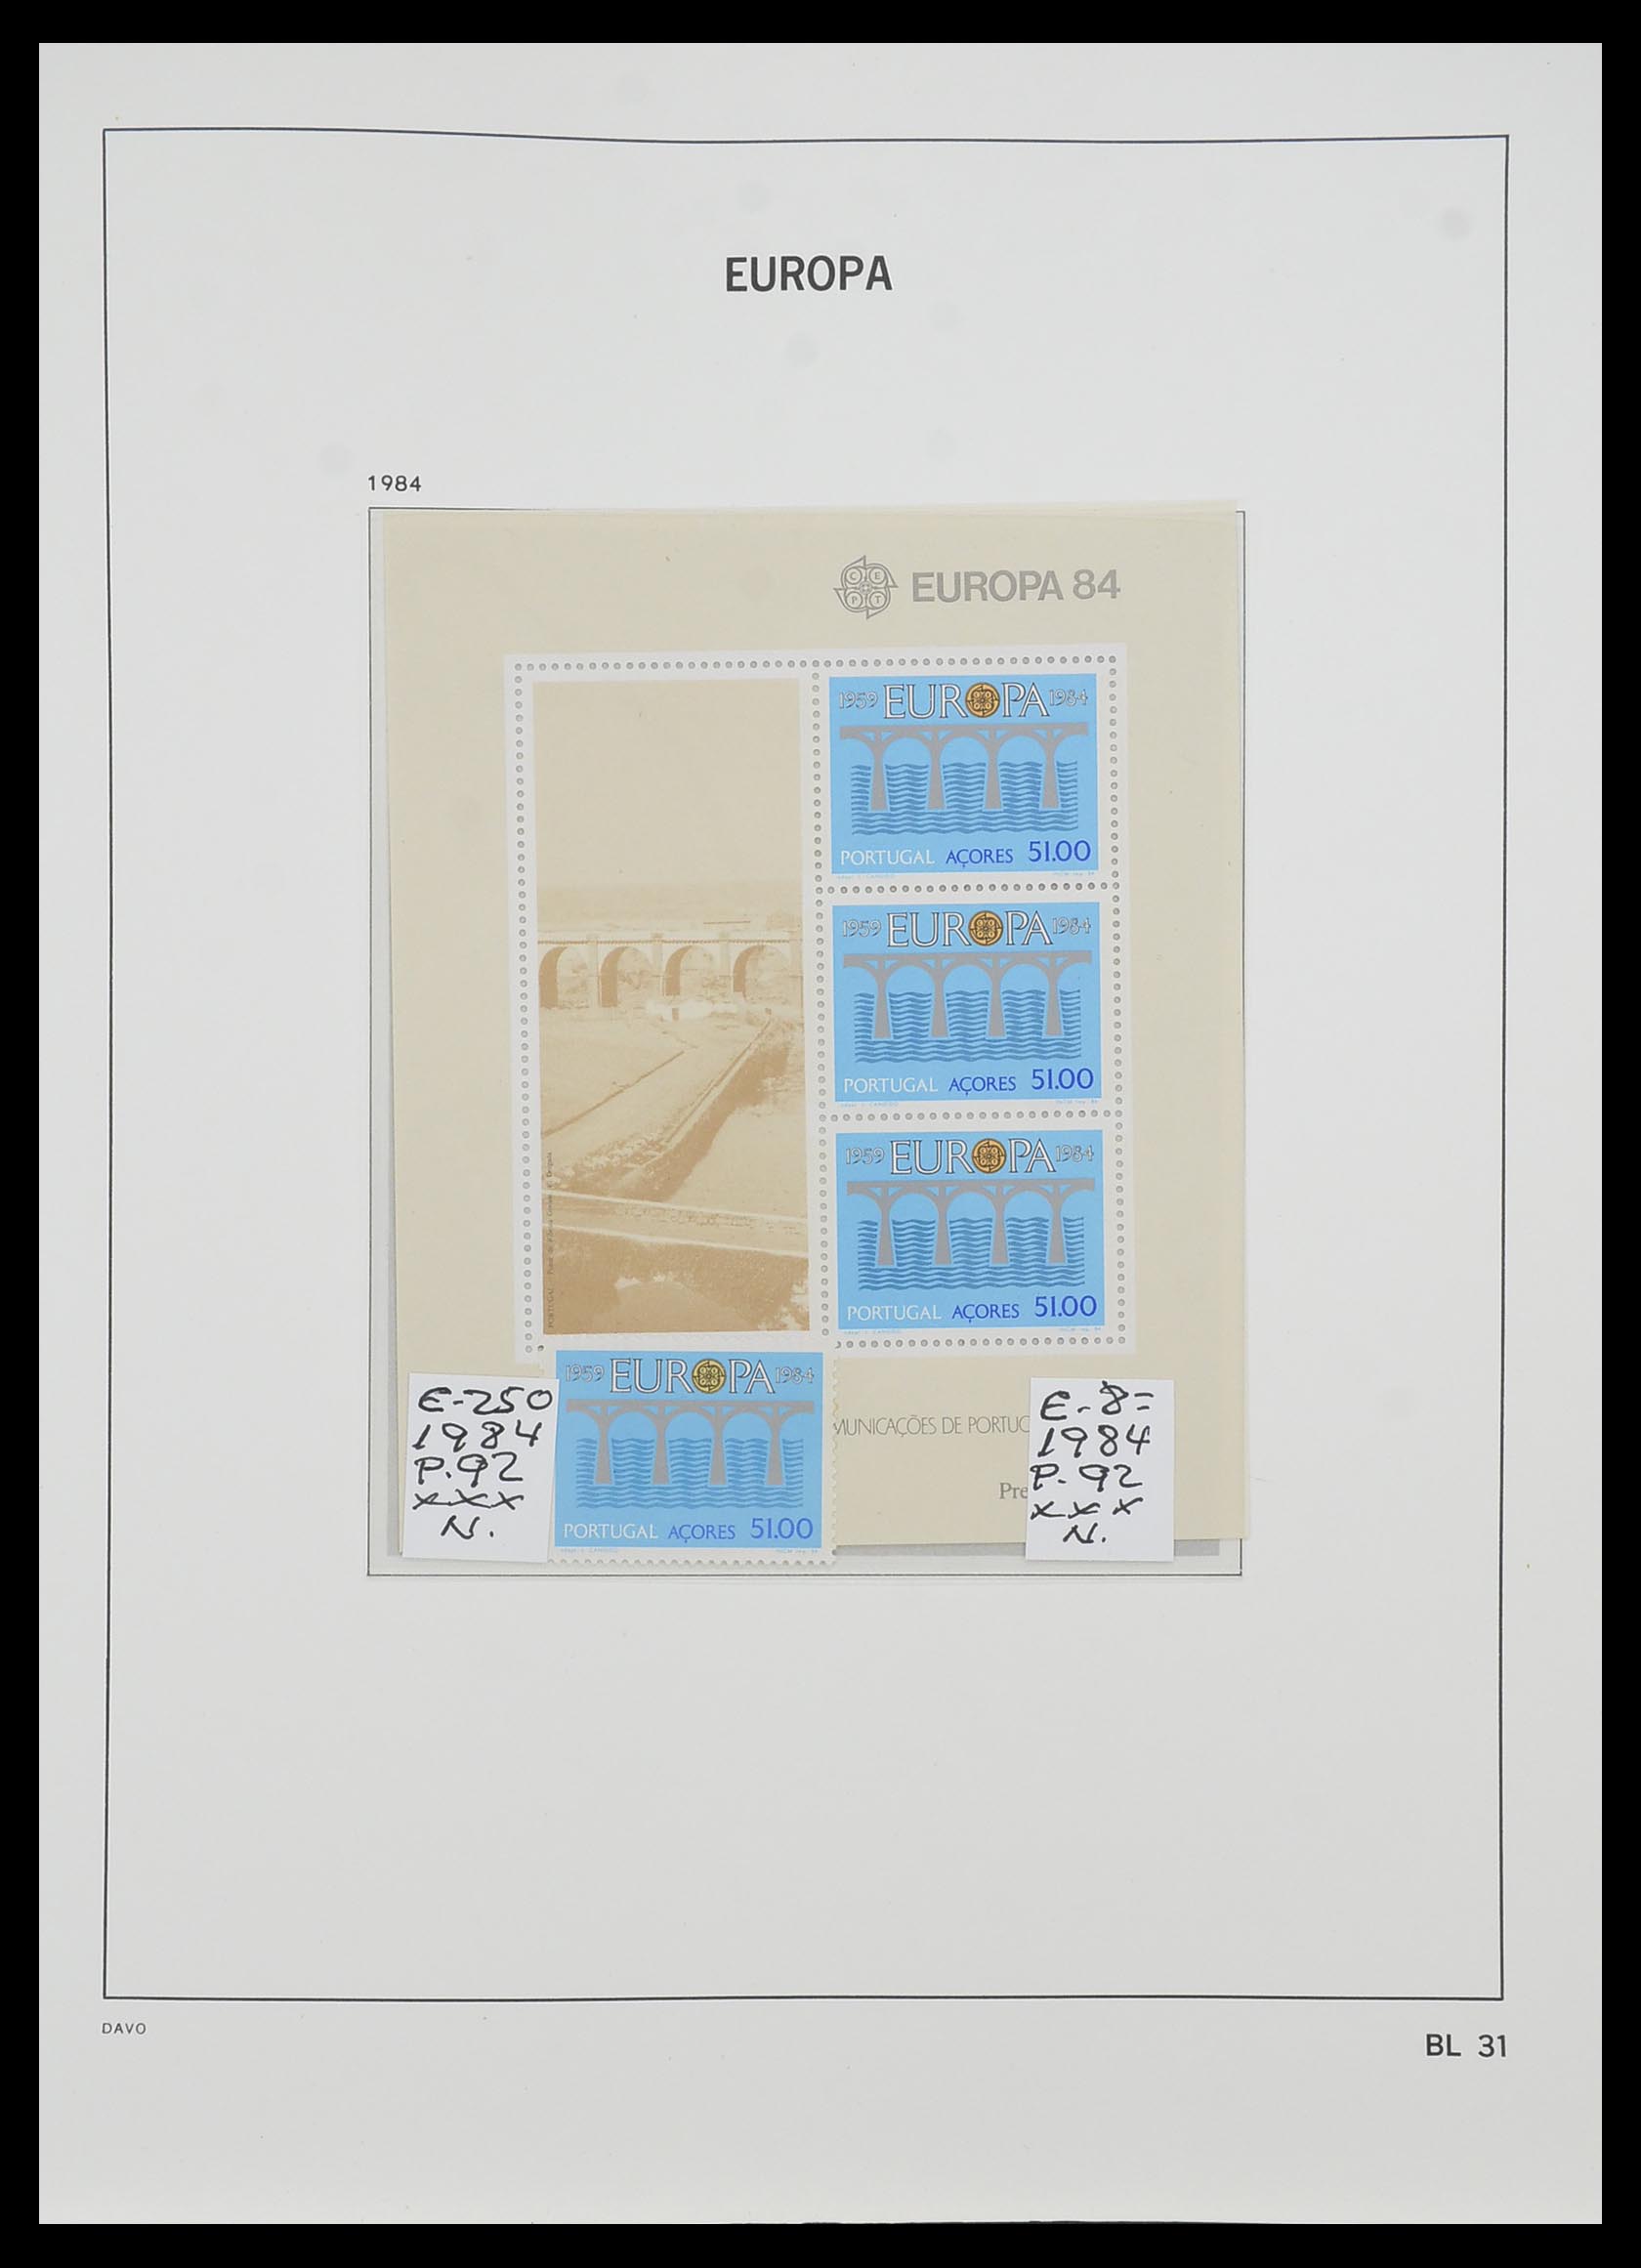 33985 032 - Stamp collection 33985 Europa CEPT souvenir sheets 1974-2014.